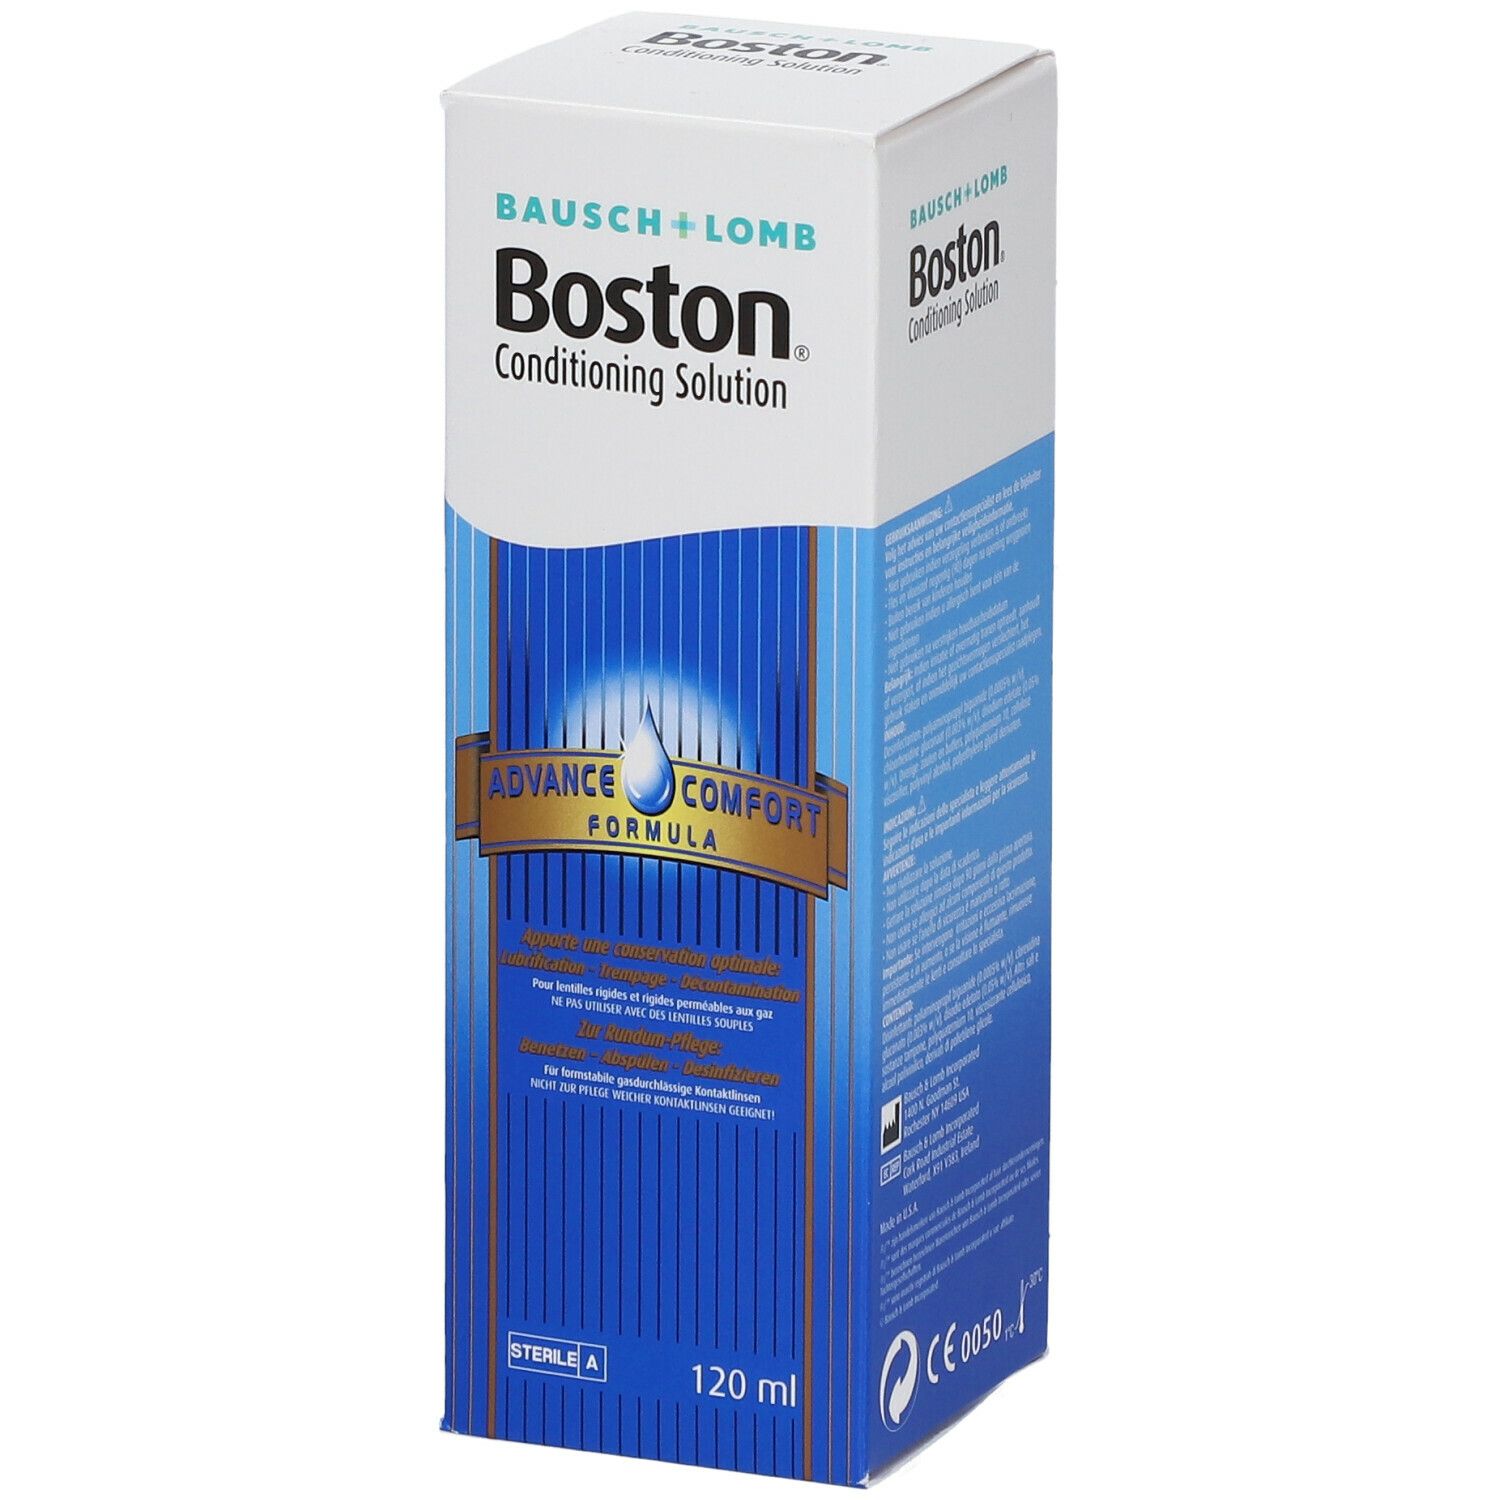 Boston® Aufbewahrungslösung